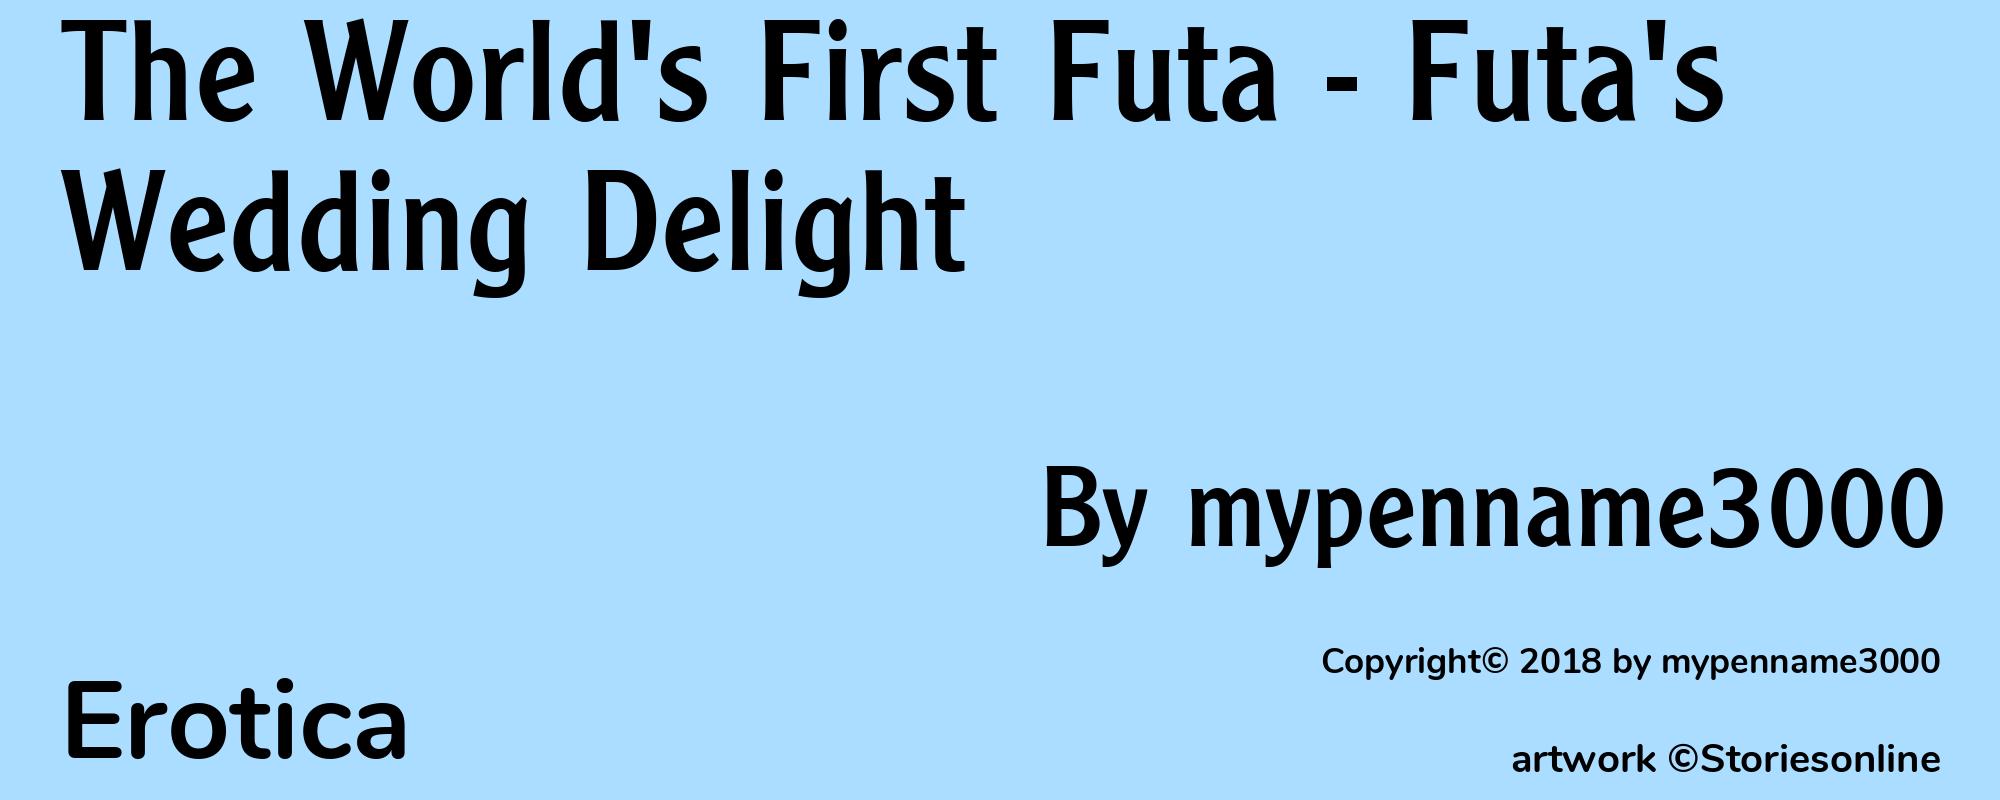 The World's First Futa - Futa's Wedding Delight - Cover